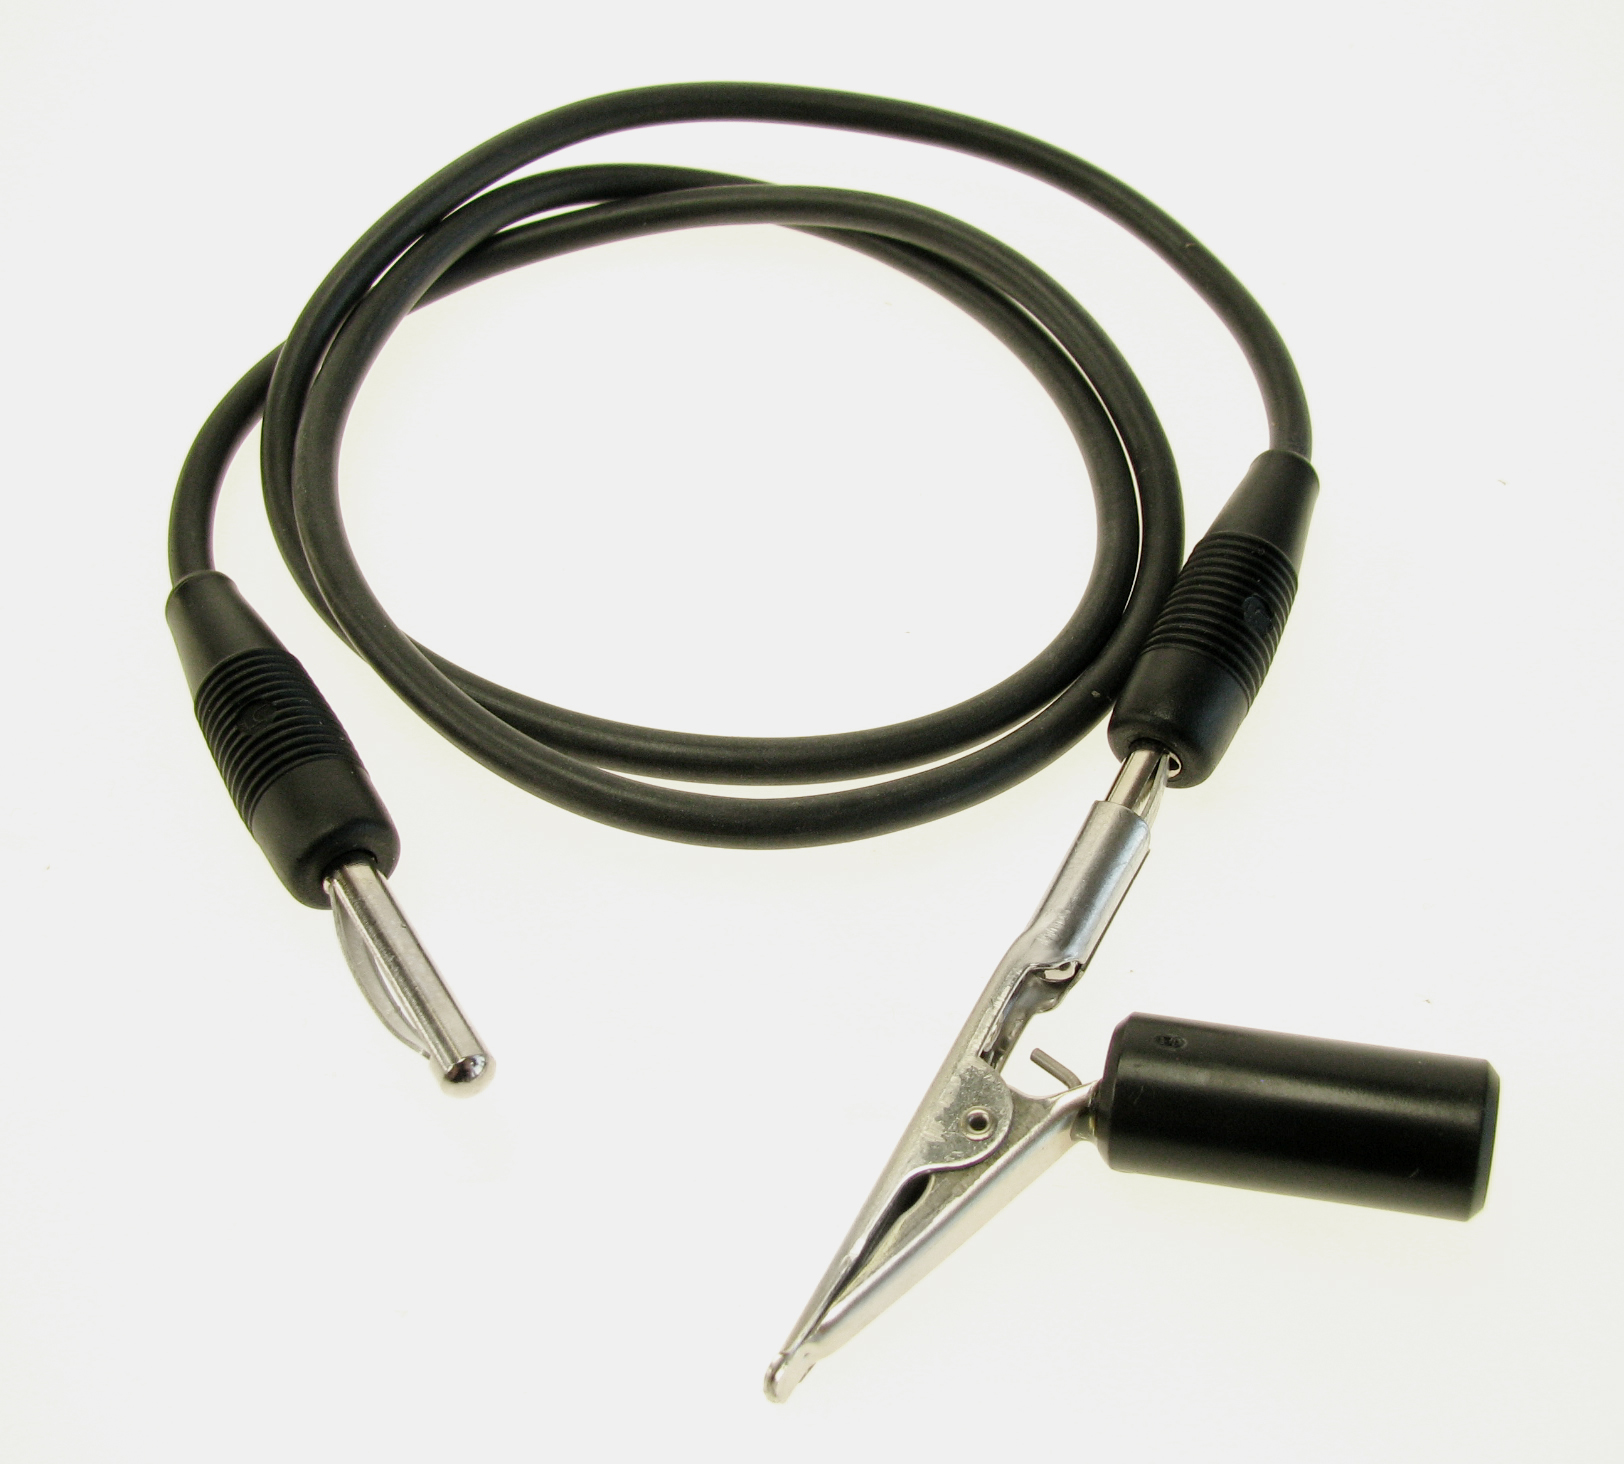 Warenklem met kabel zwart en stekker voor Rhodinette